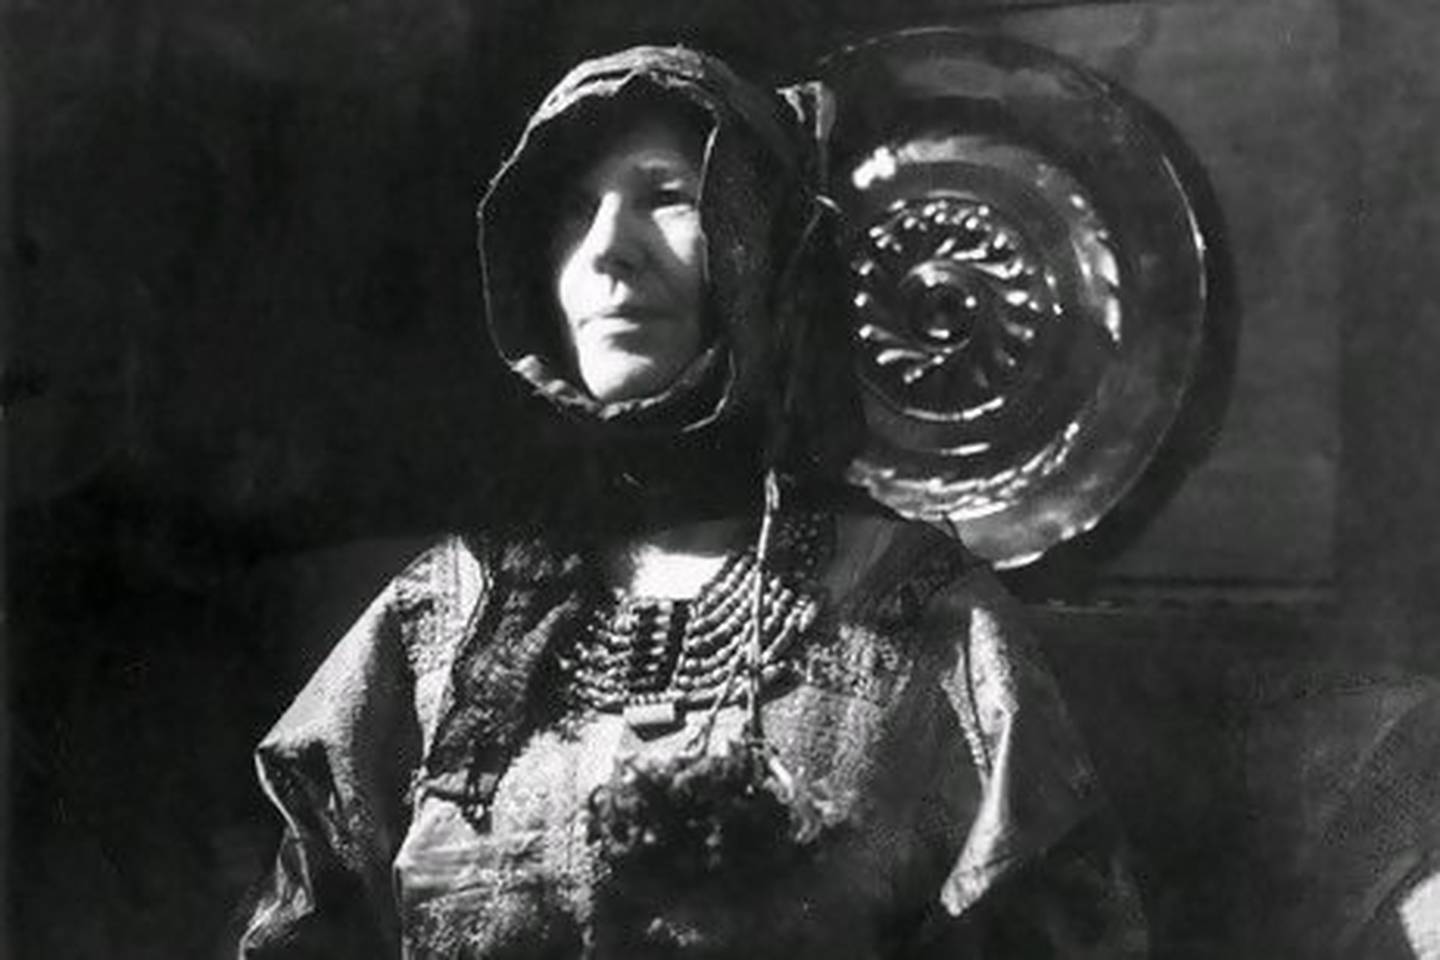 The British explorer and writer Freya Stark dressed in the traditional costume of the Hadramaut region of Yemen.